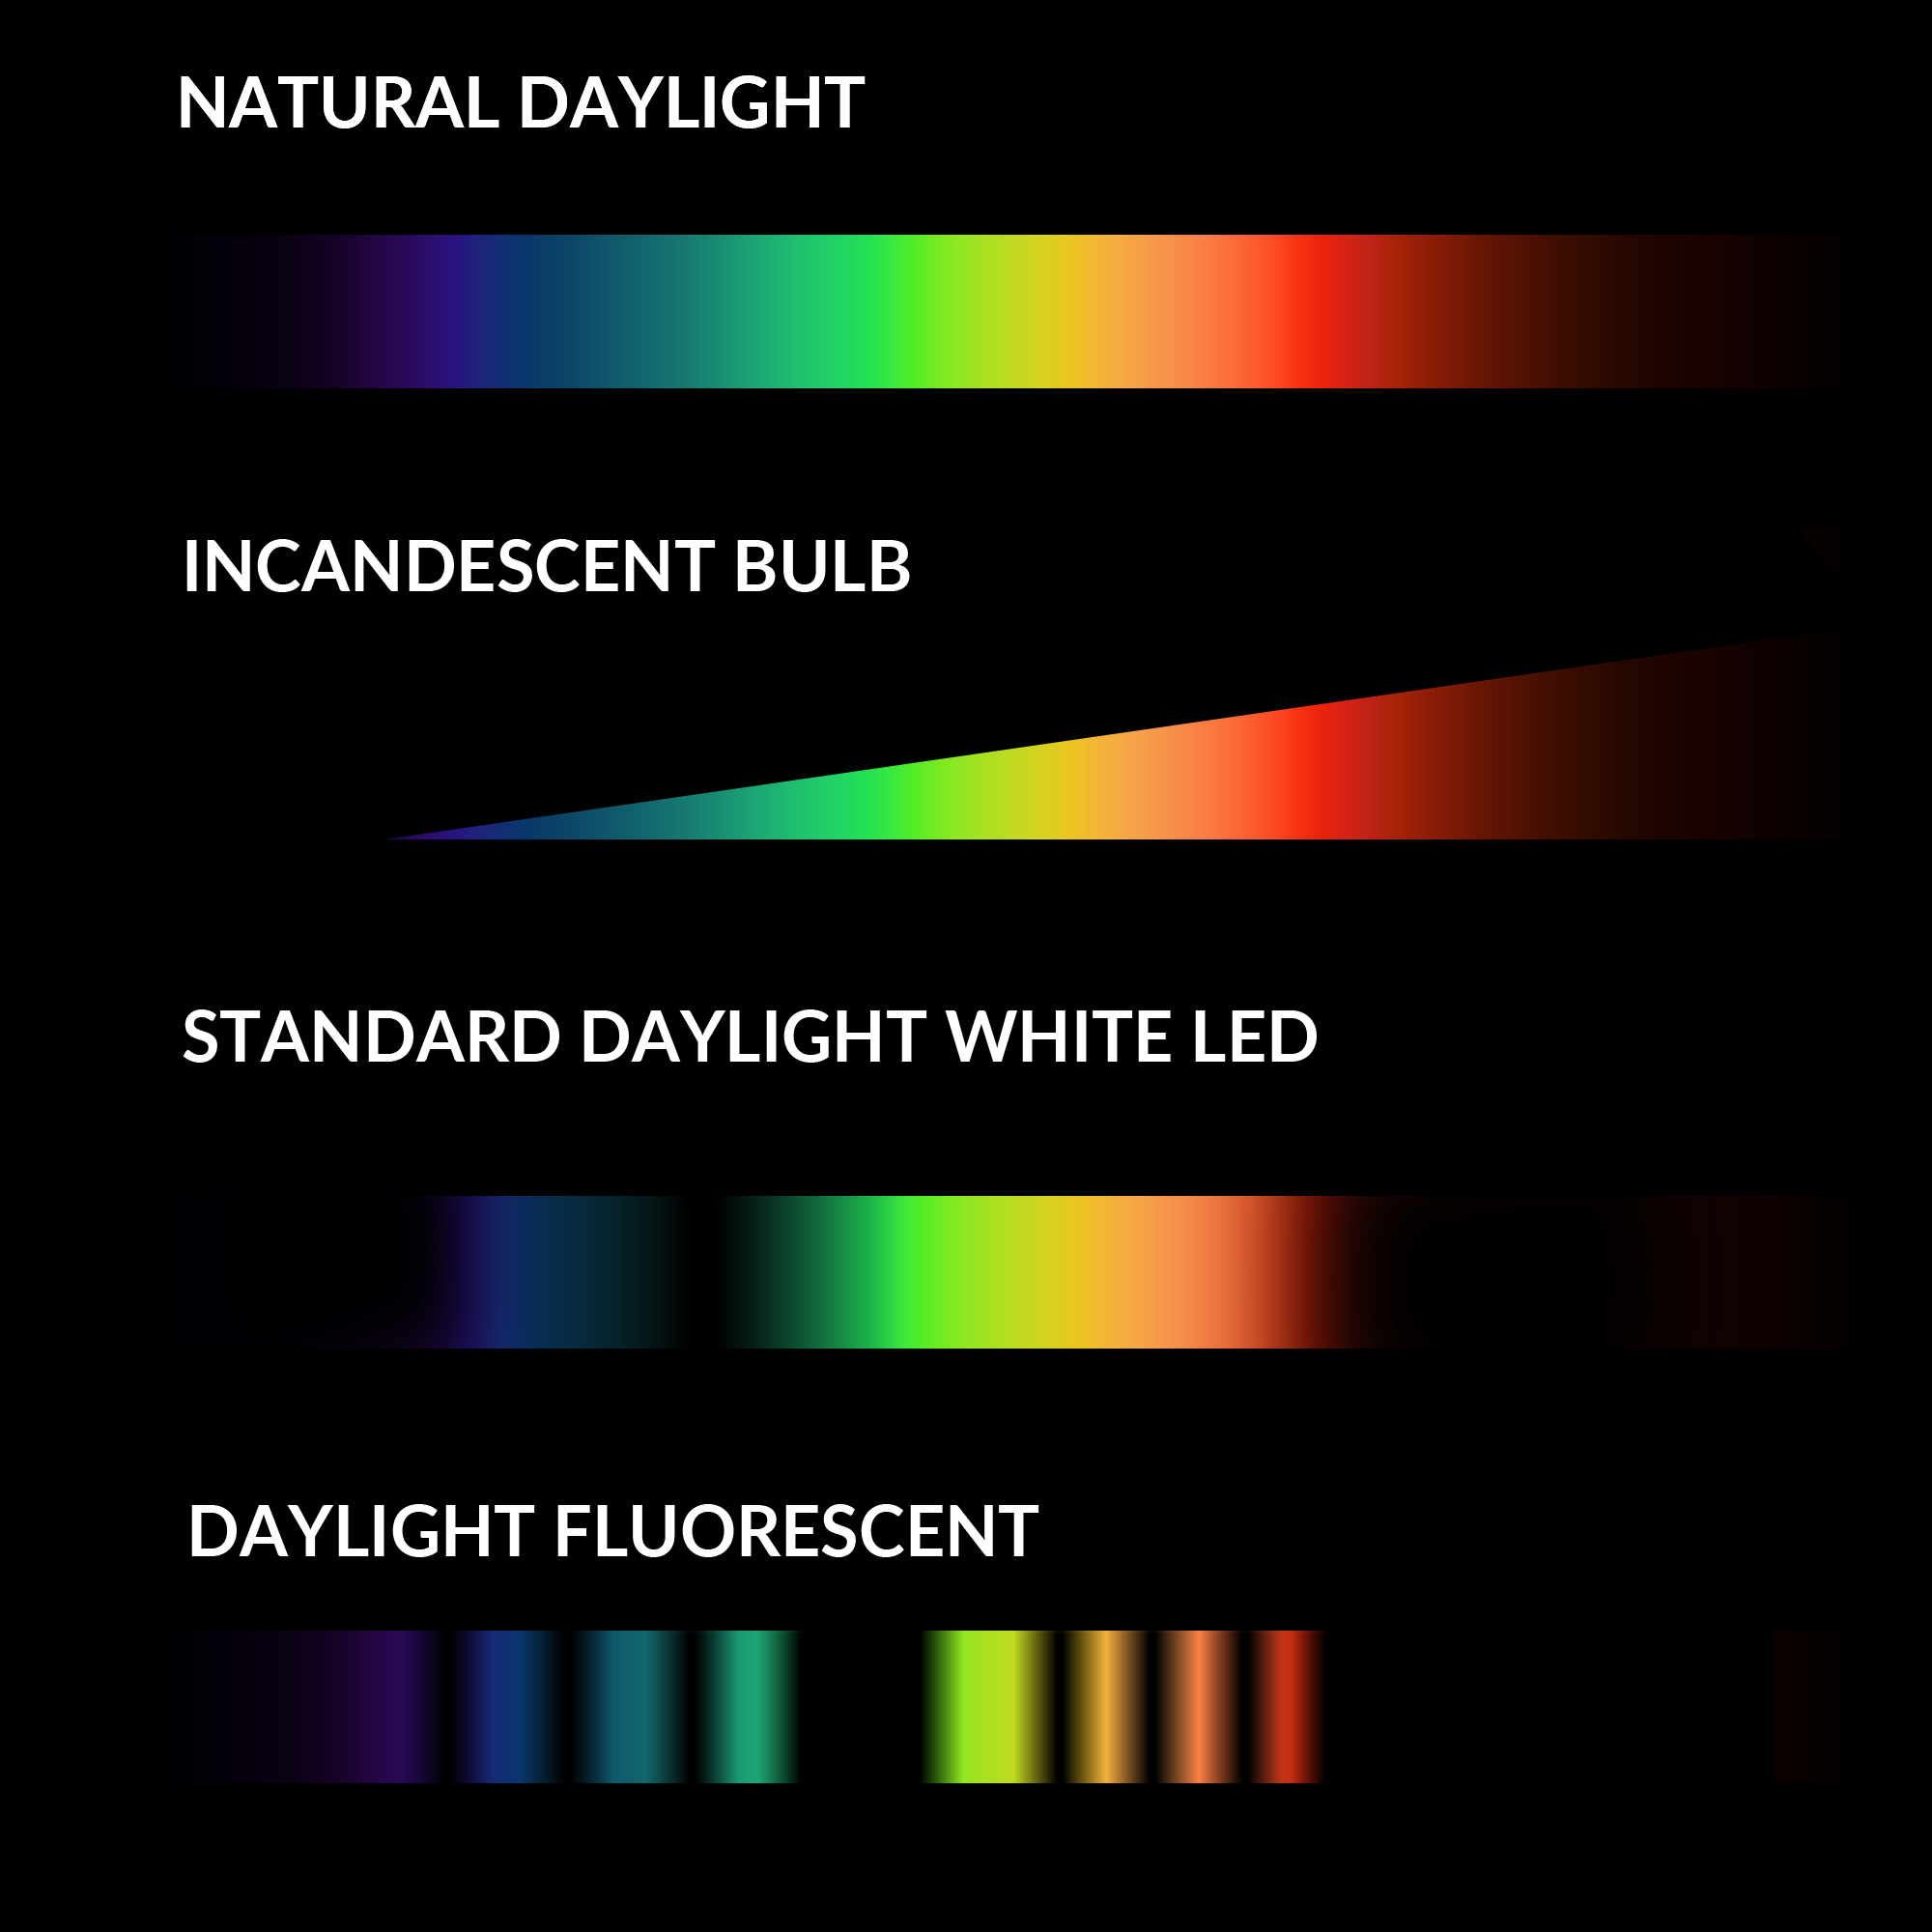 spectrum of colors